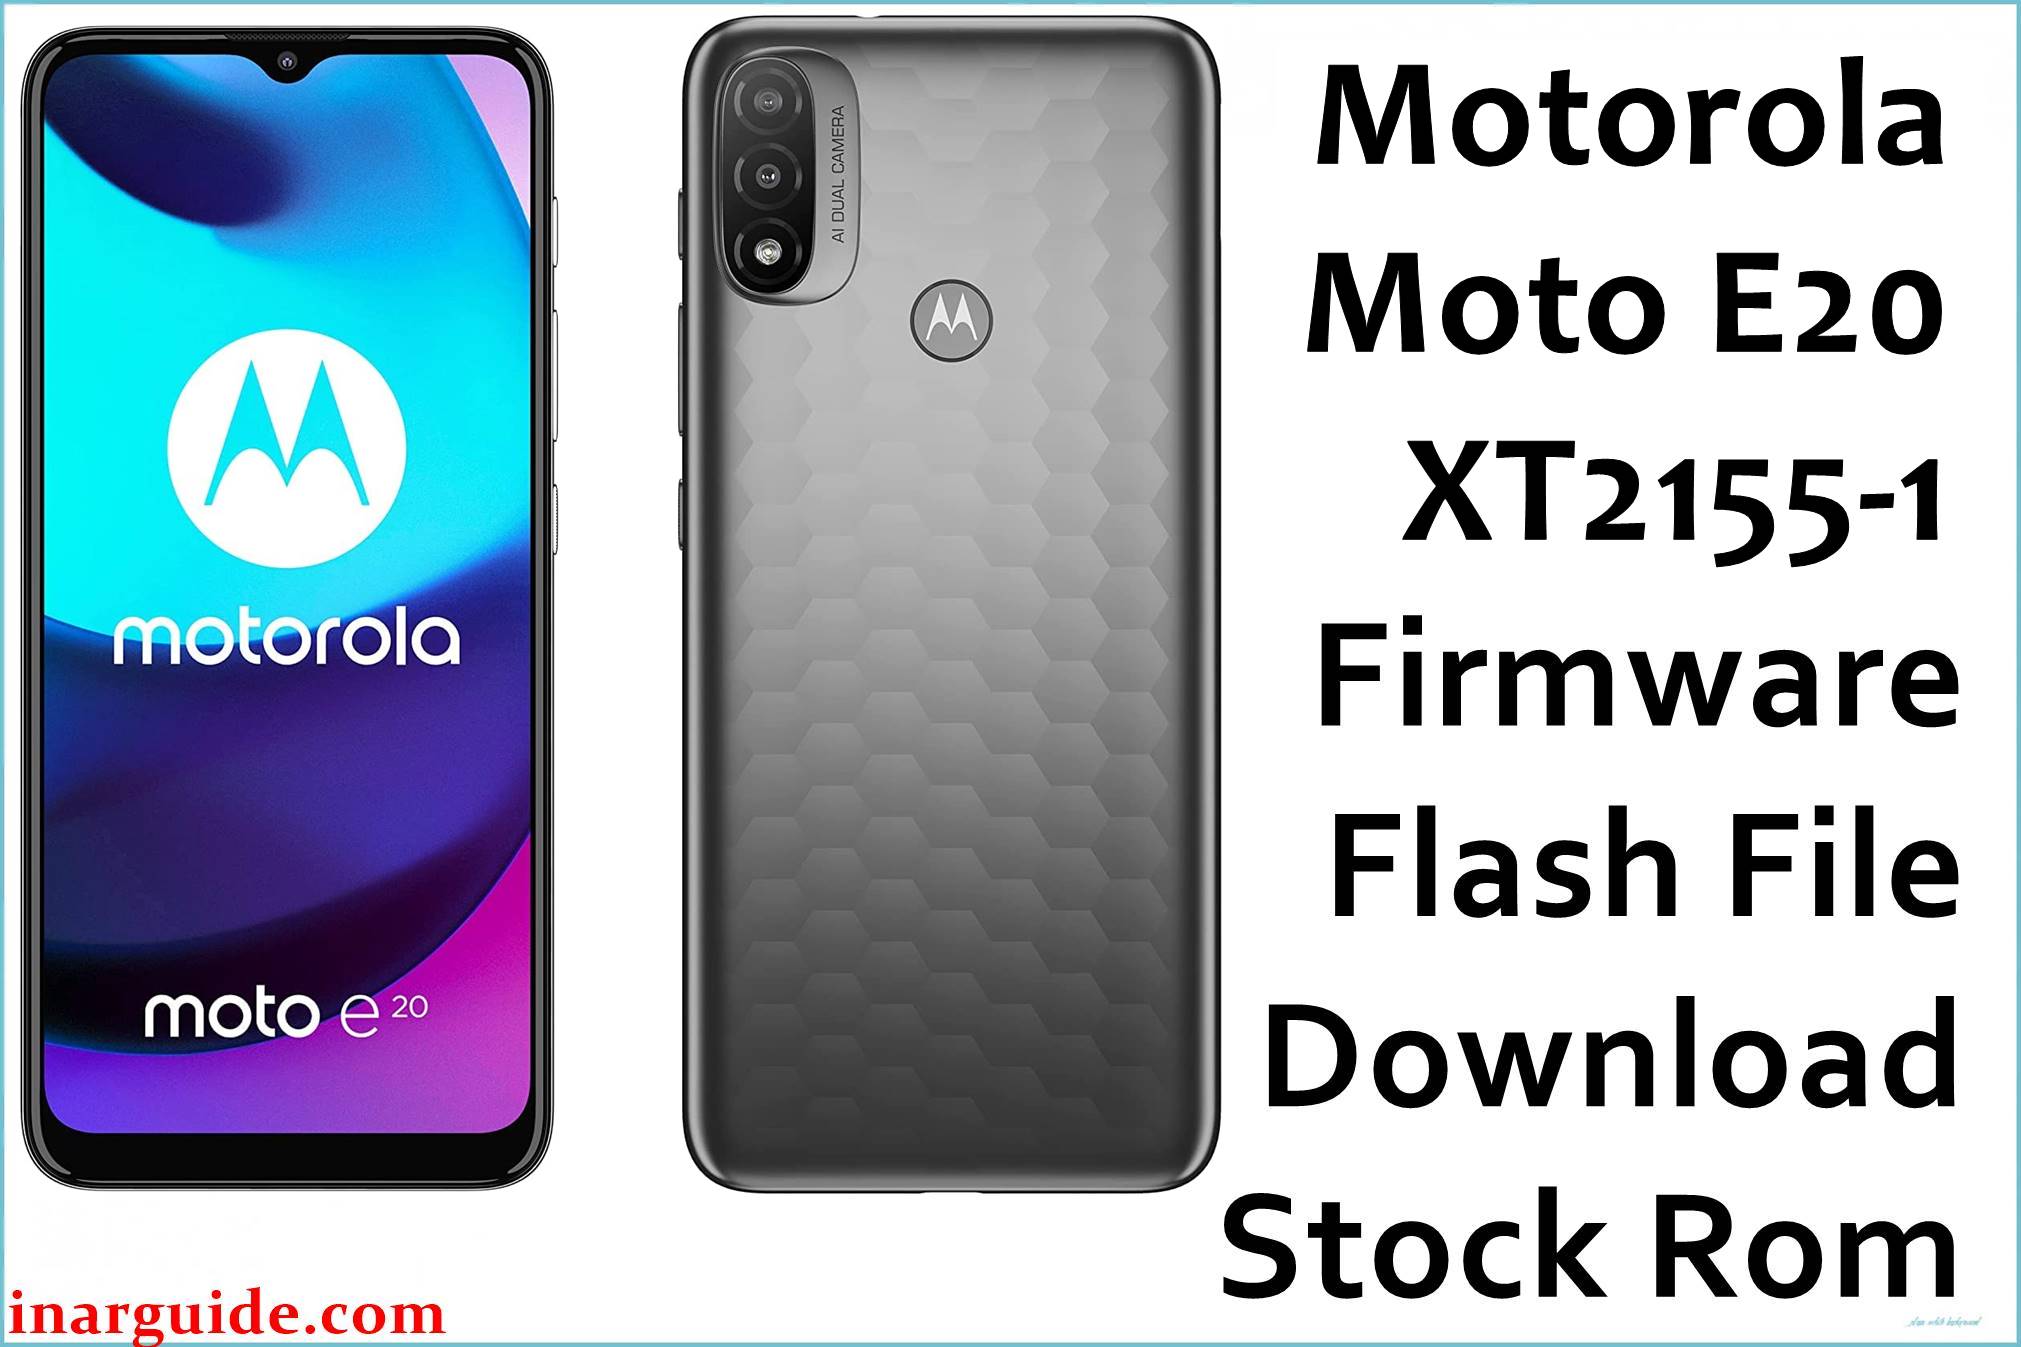 Motorola Moto E20 XT2155-1